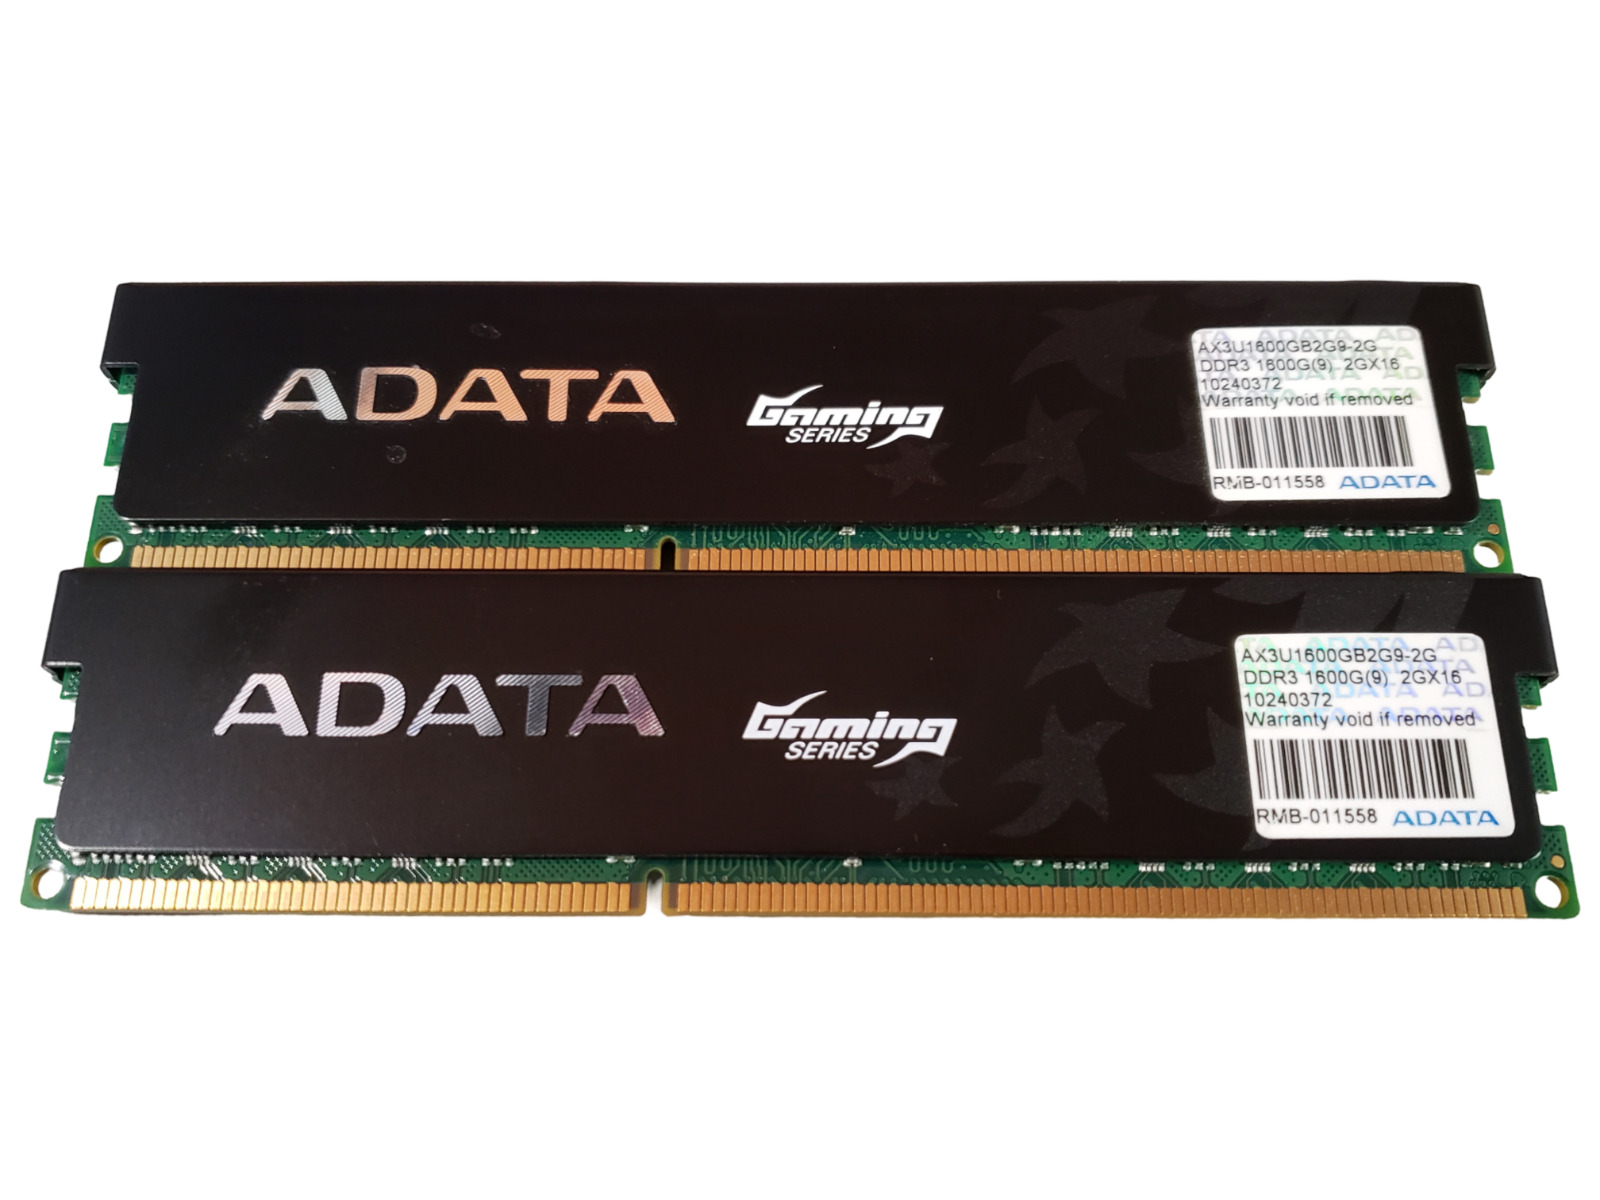 (2 Piece) Adata Gaming AX3U1600GB2G9-2G DDR3-1600 4GB (2x2GB) Memory